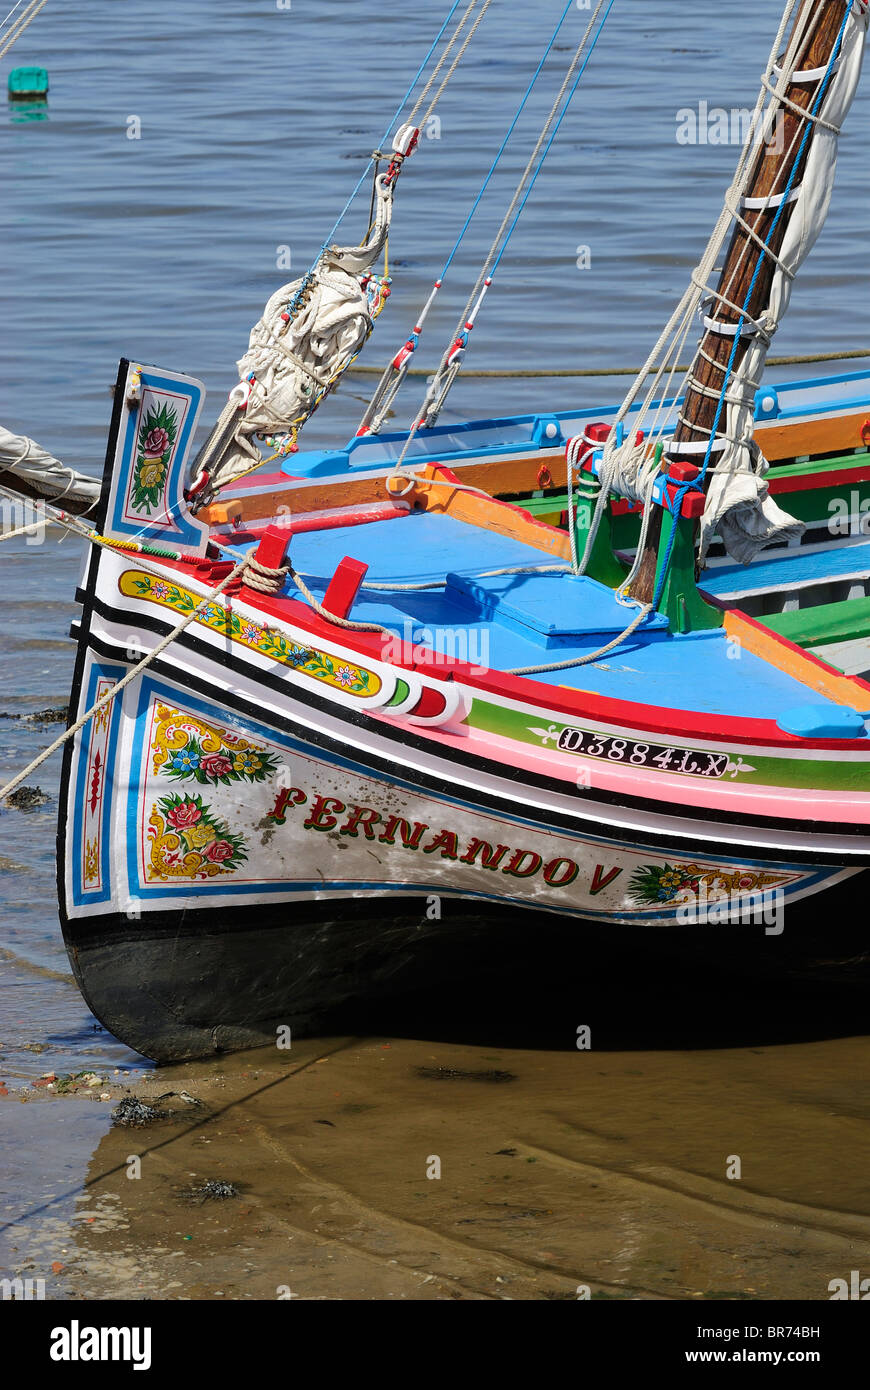 Fragata, typische Fracht- und Passagierschiff vom Fluss Tejo, Lissabon, Portugal Stockfoto